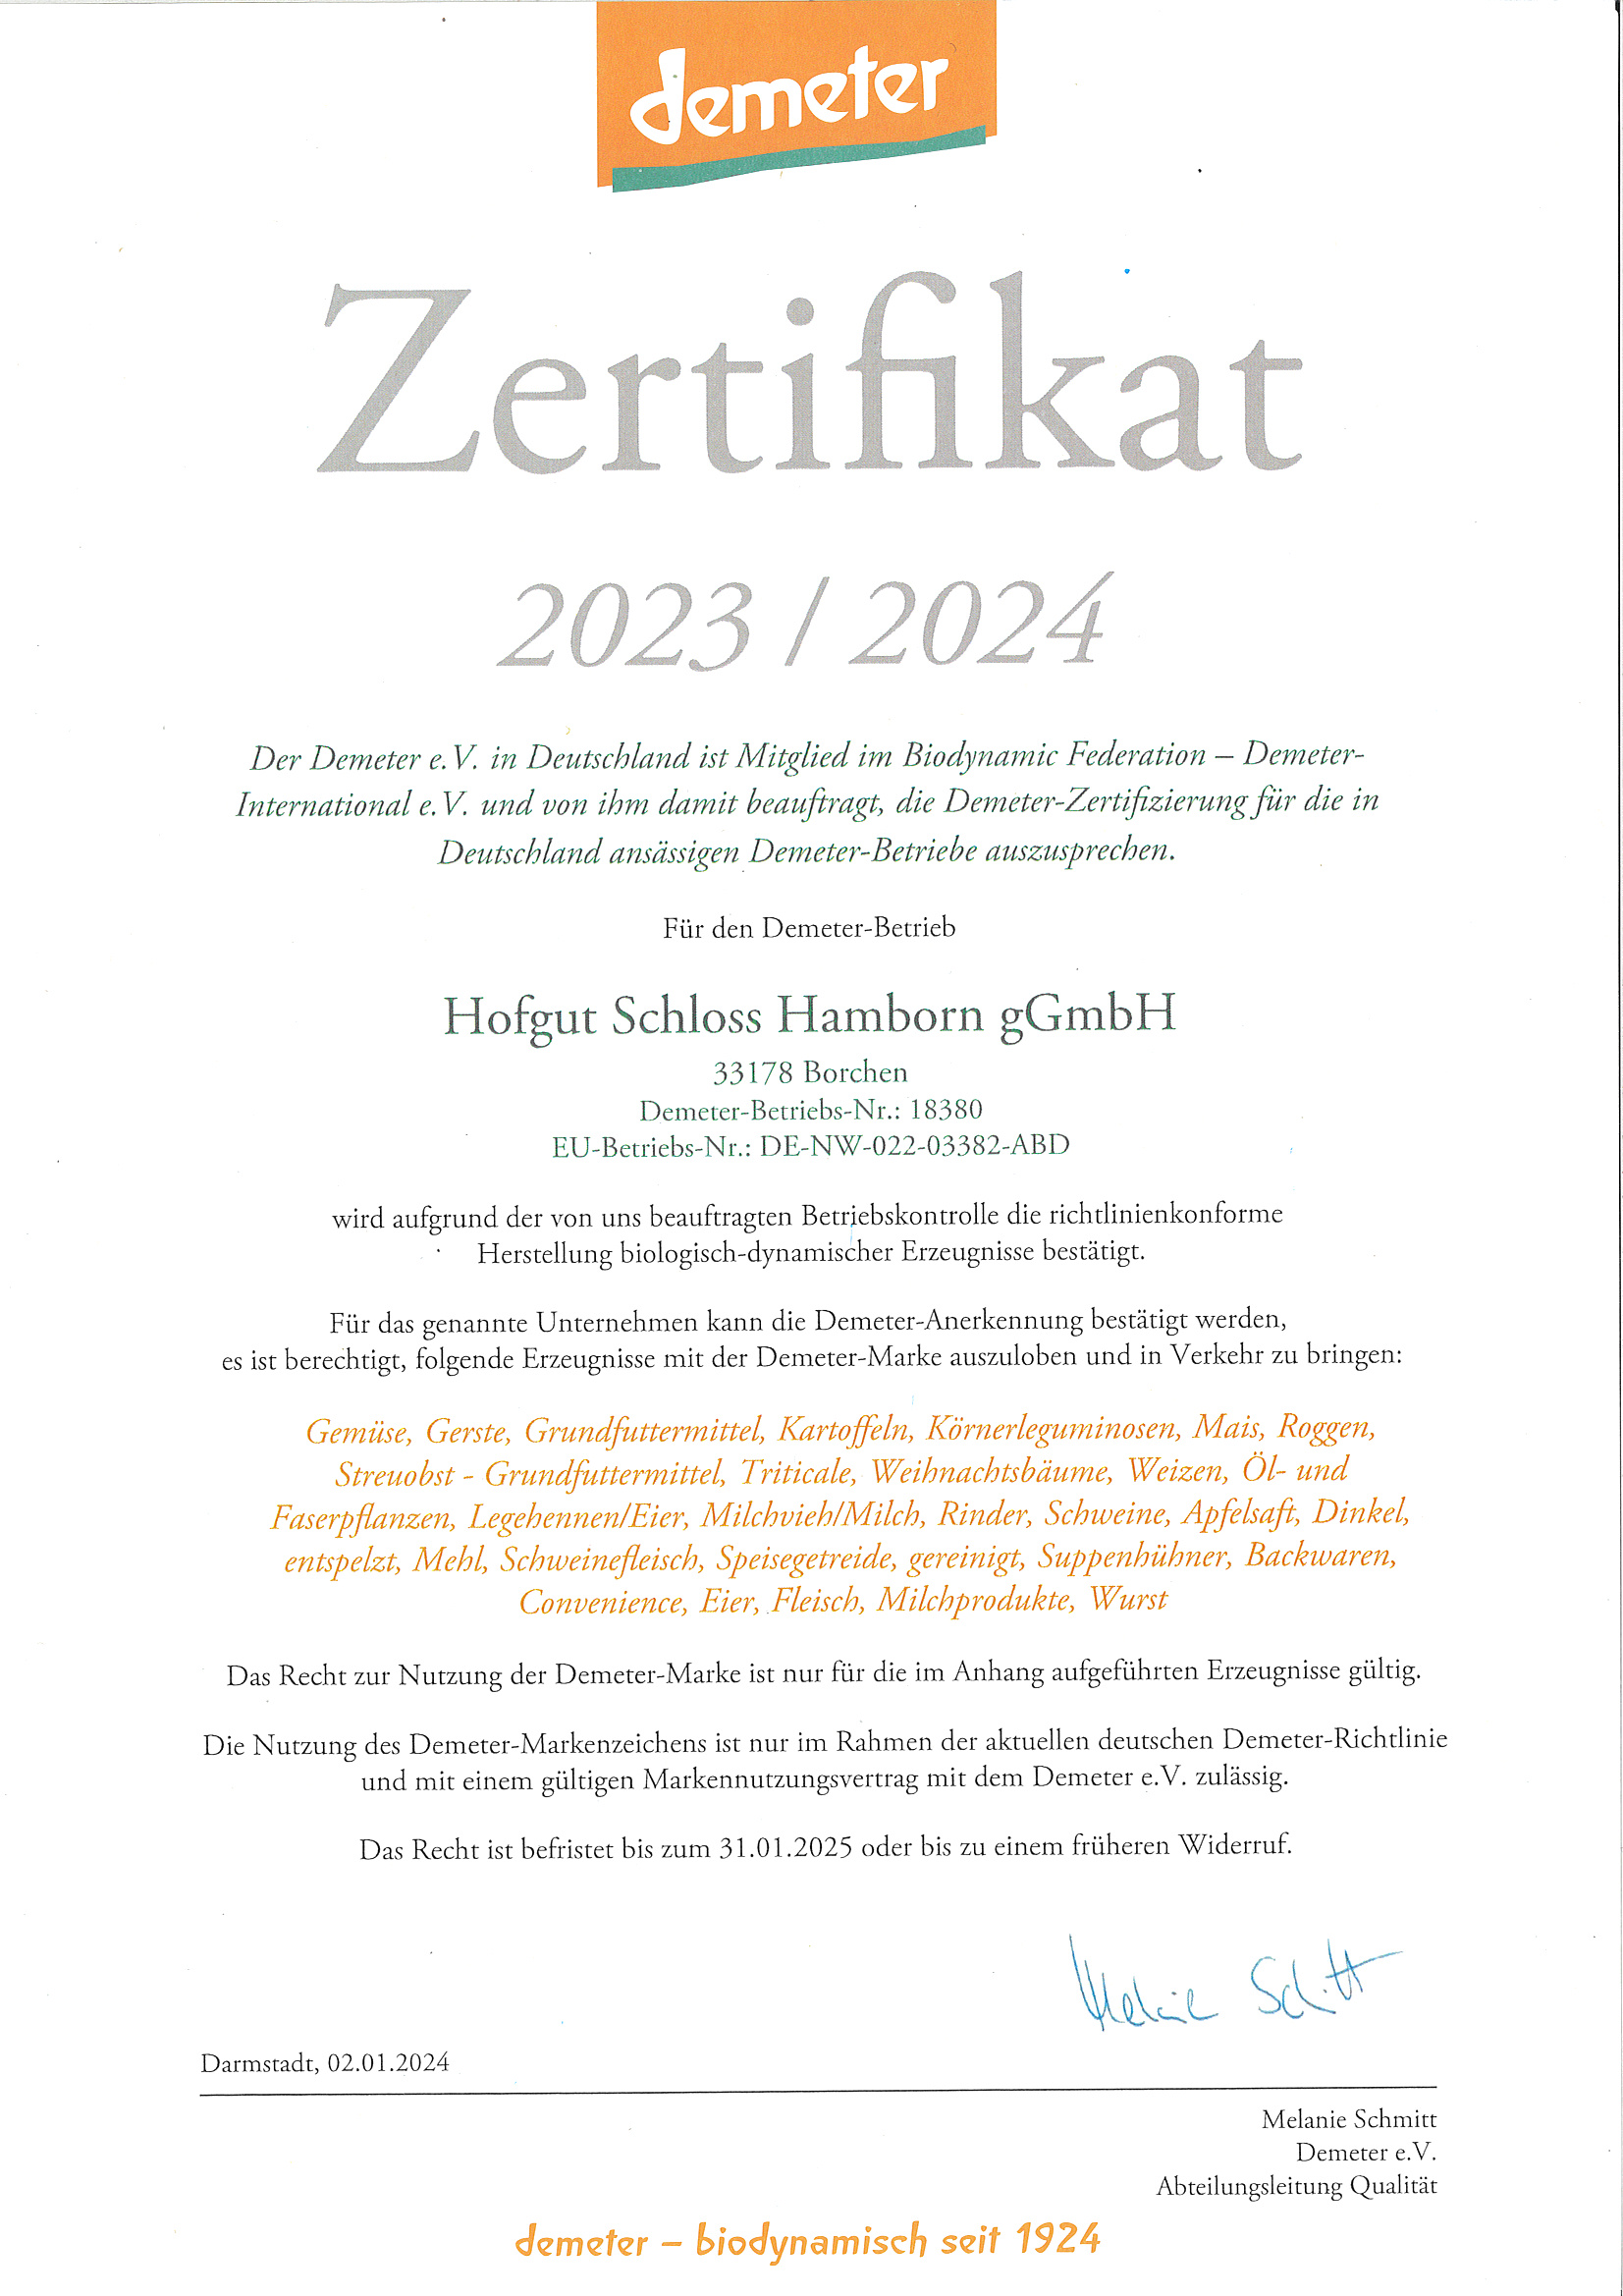 Demeter Zertifikat 2023 / 2024